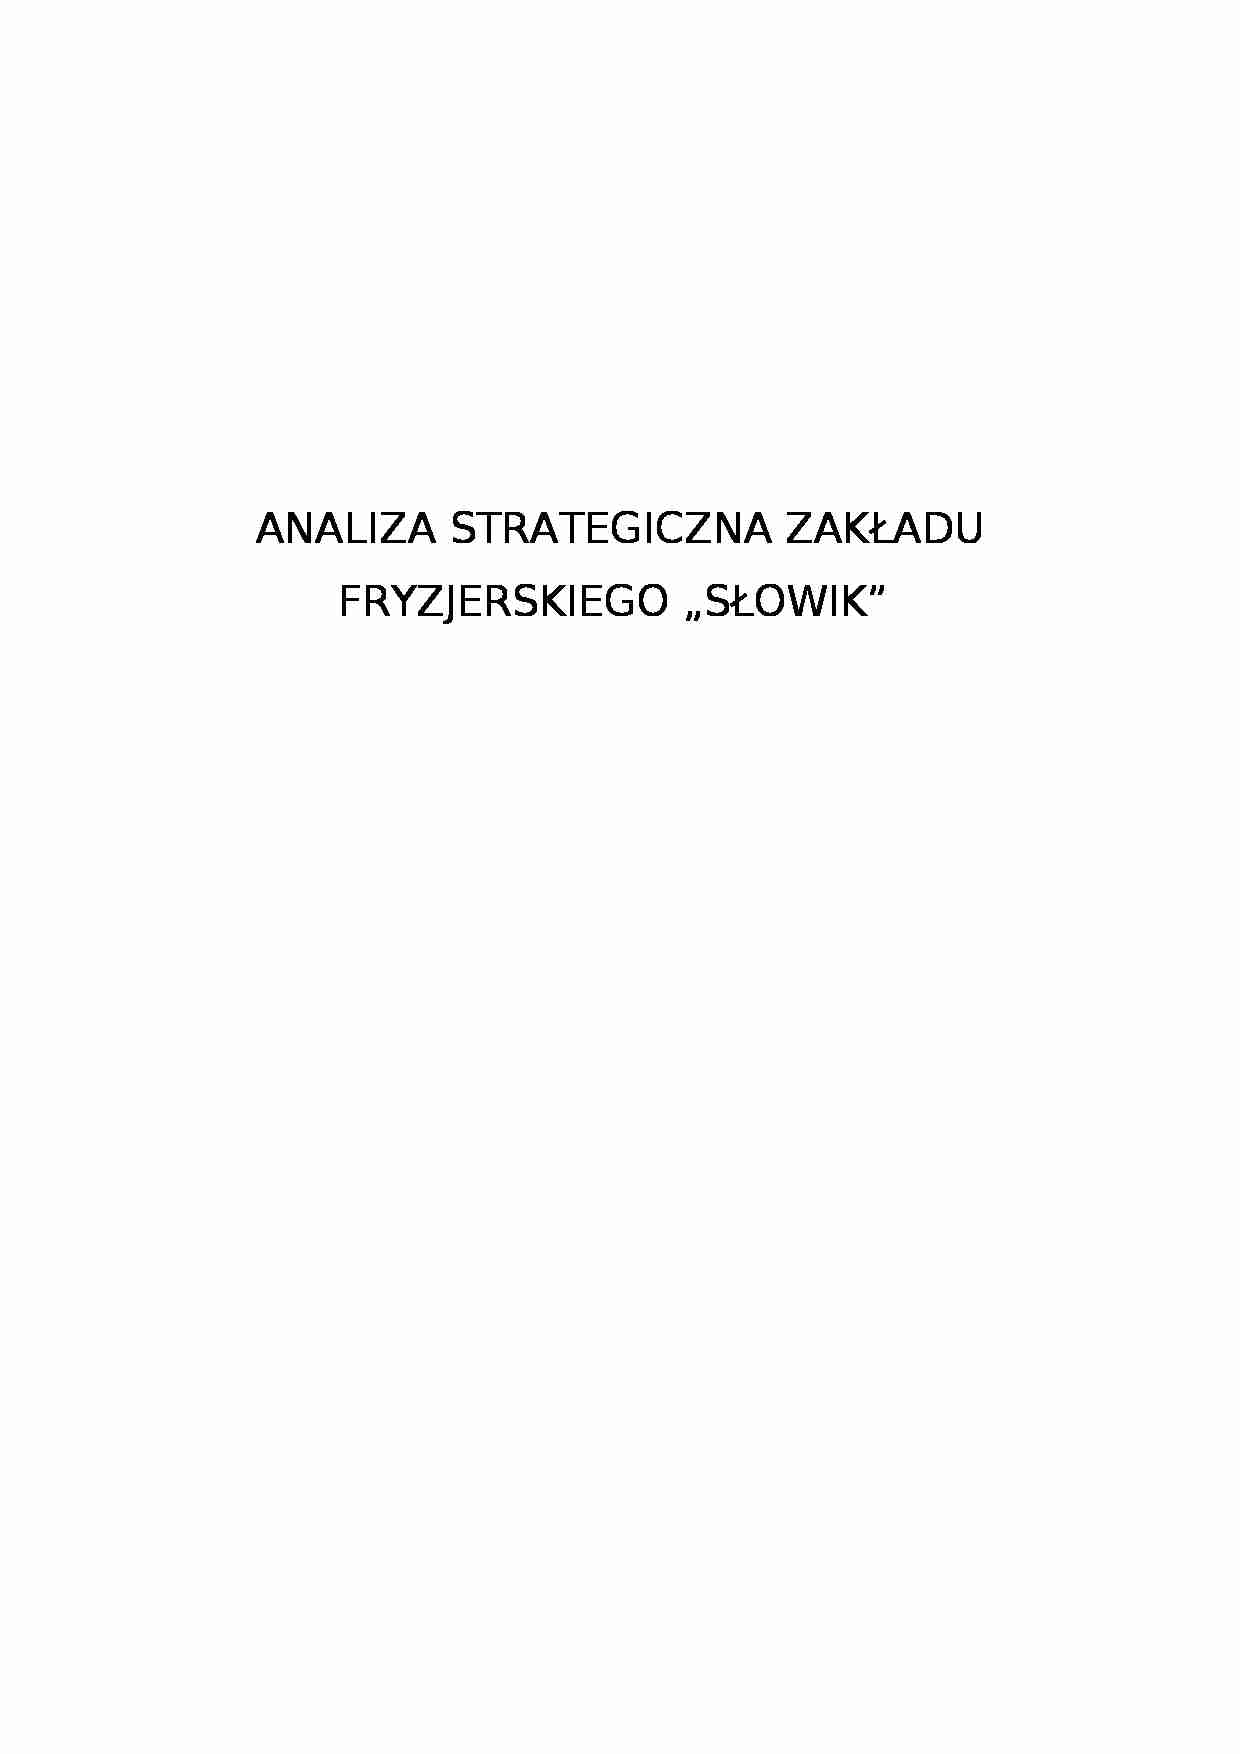 Analiza strategiczna zakładu fryzjerskiego Słowik - strona 1